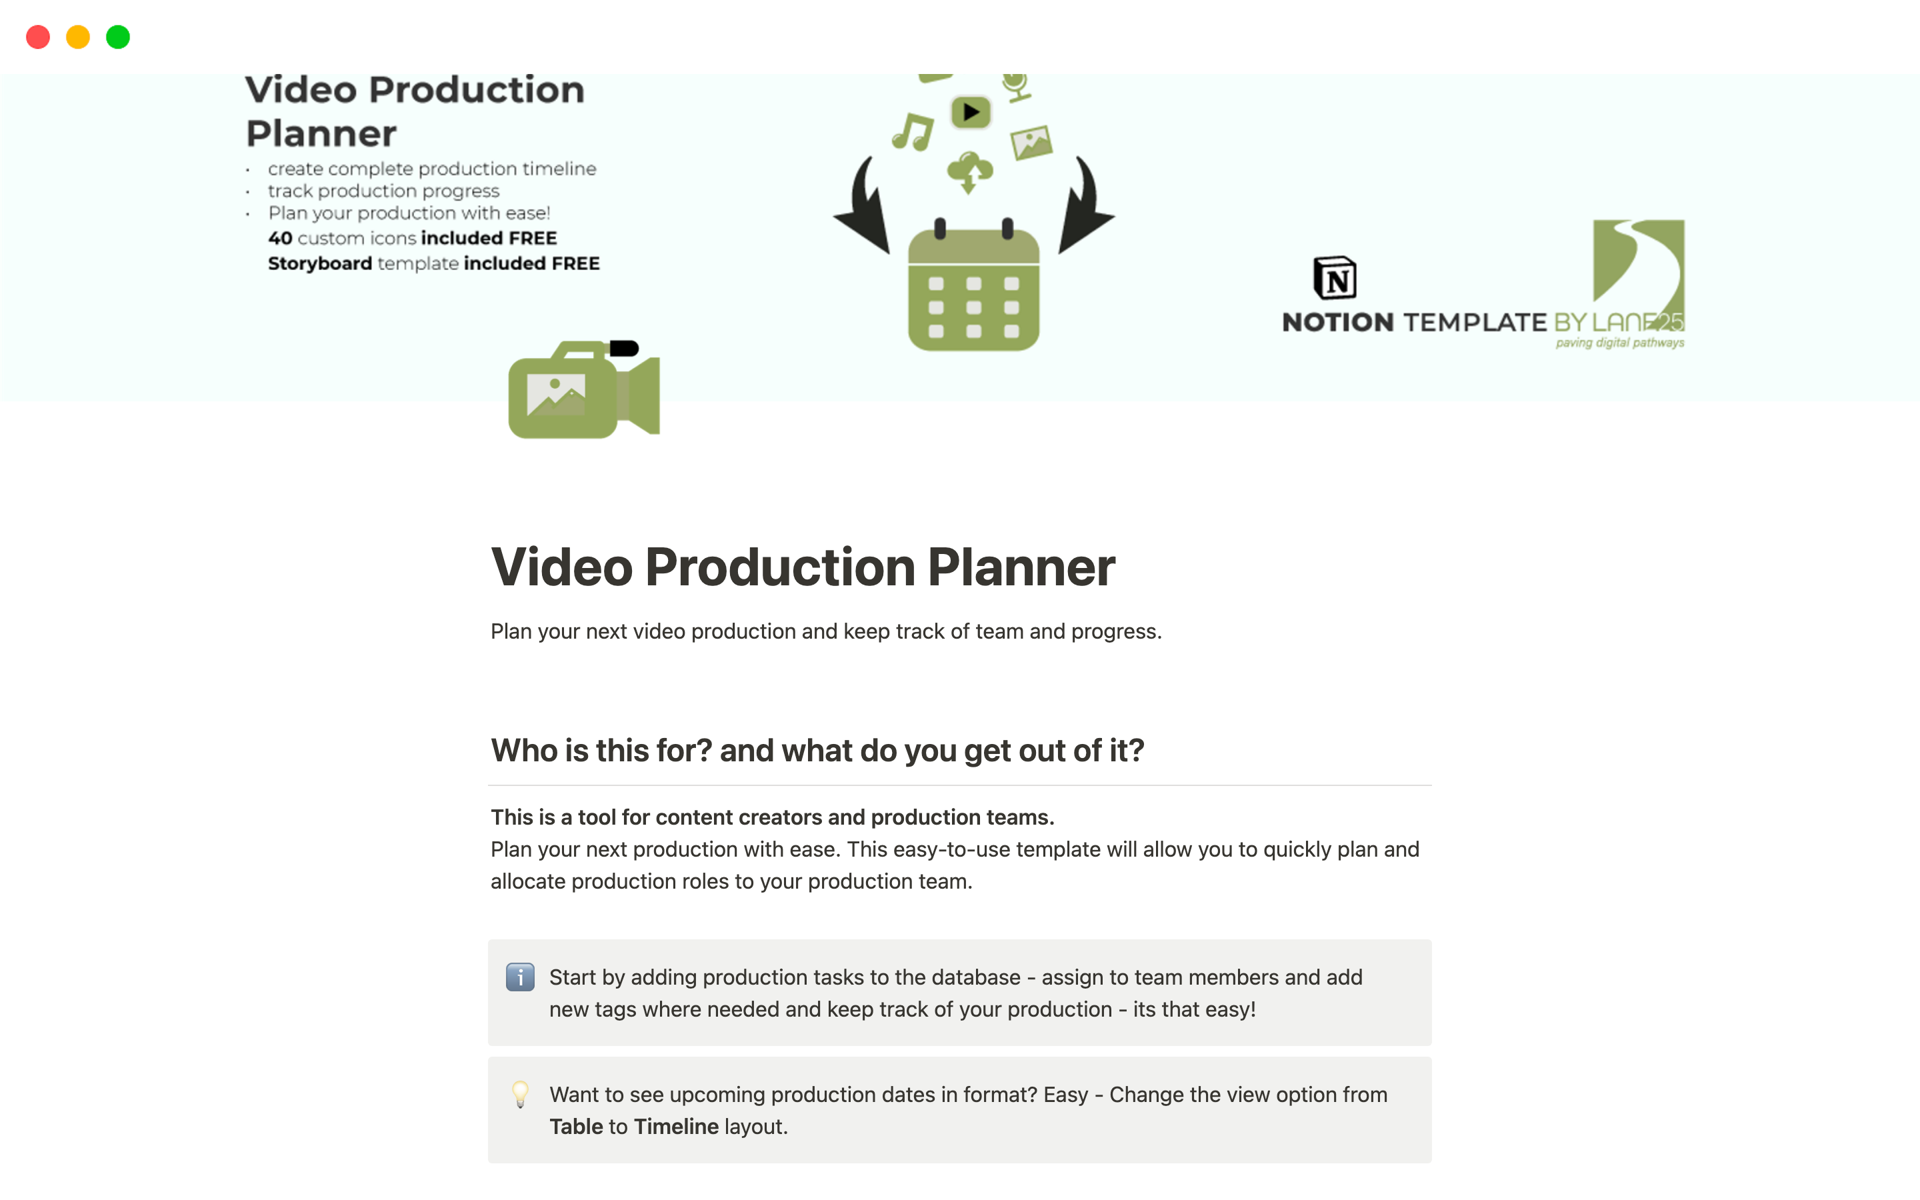 Uma prévia do modelo para Video Production Planner